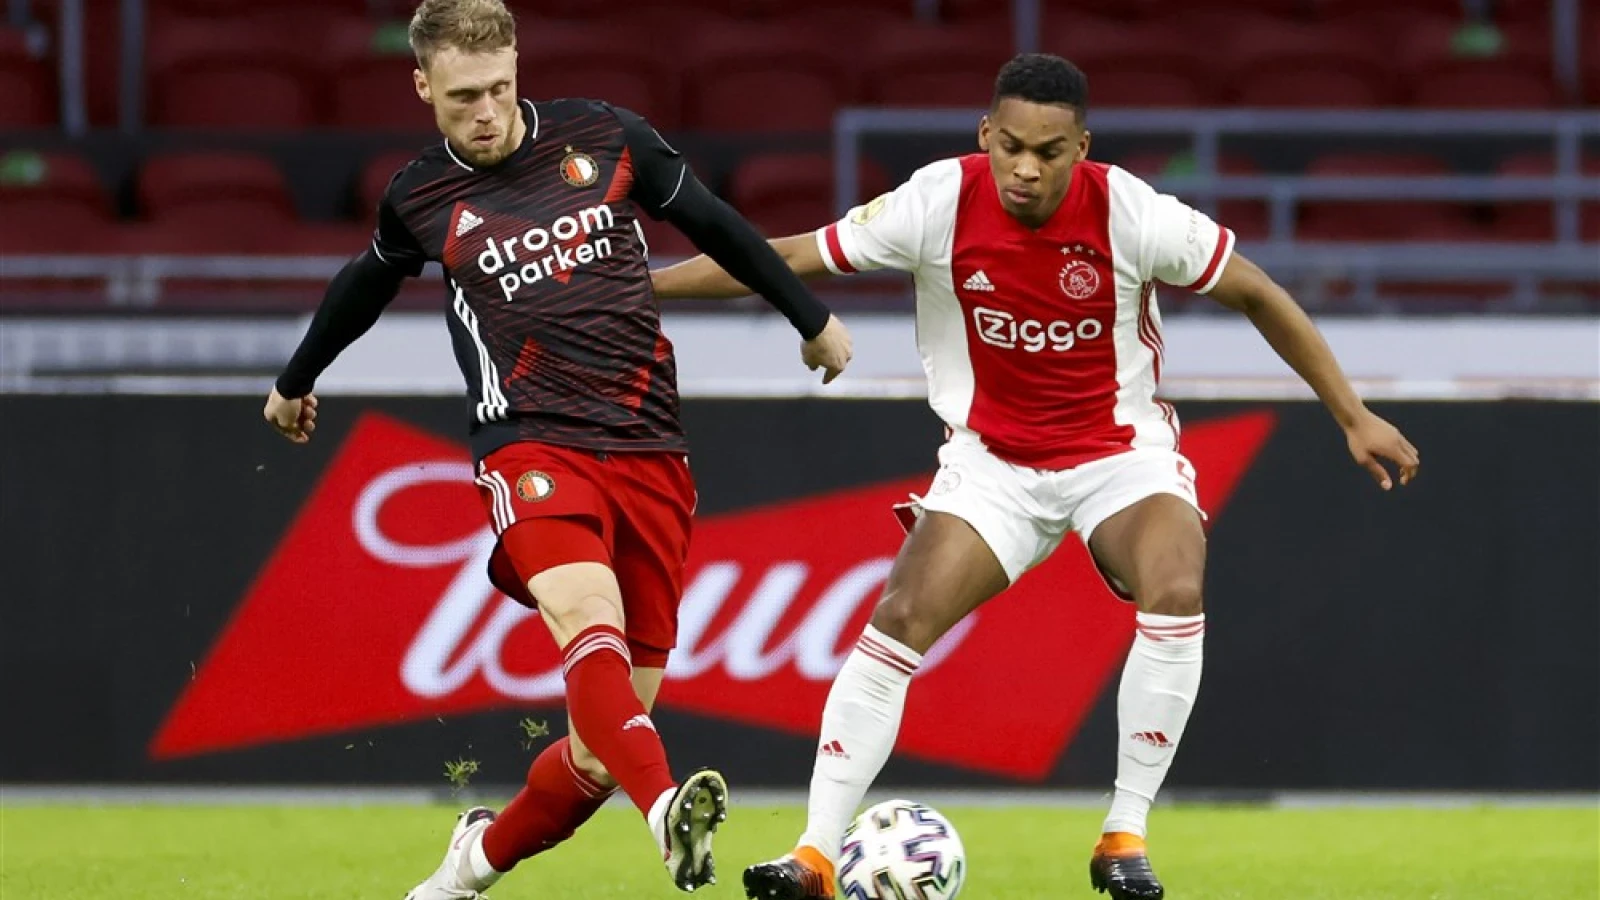 LIVE | Ajax - Feyenoord 1-0 | Einde wedstrijd